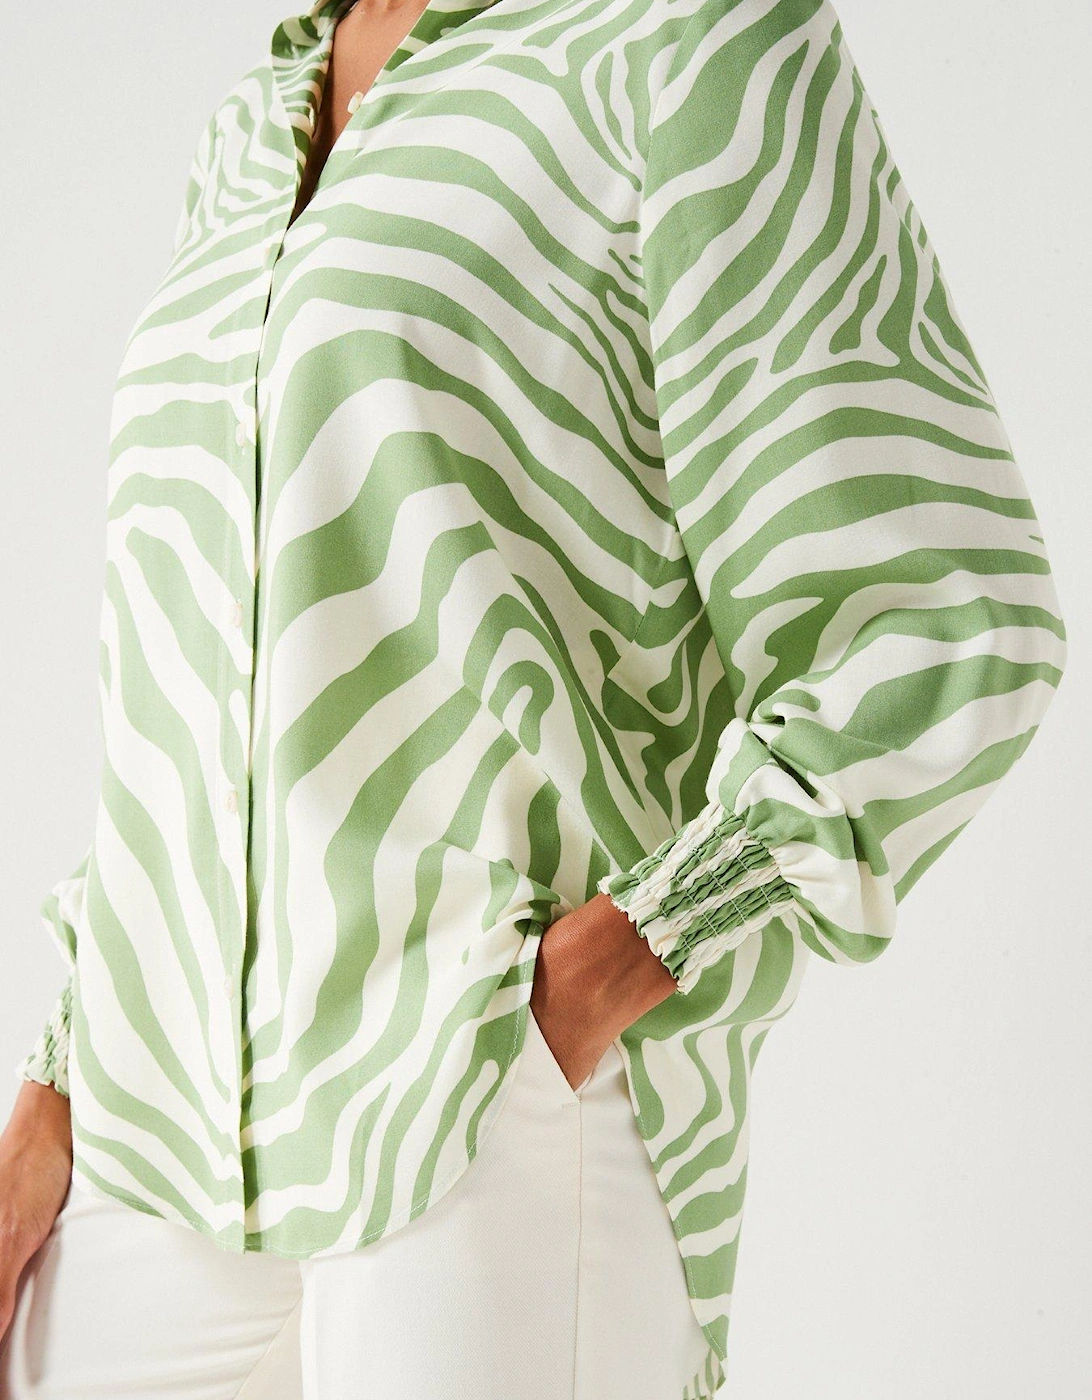 Long Sleeve Zebra Print Shirt